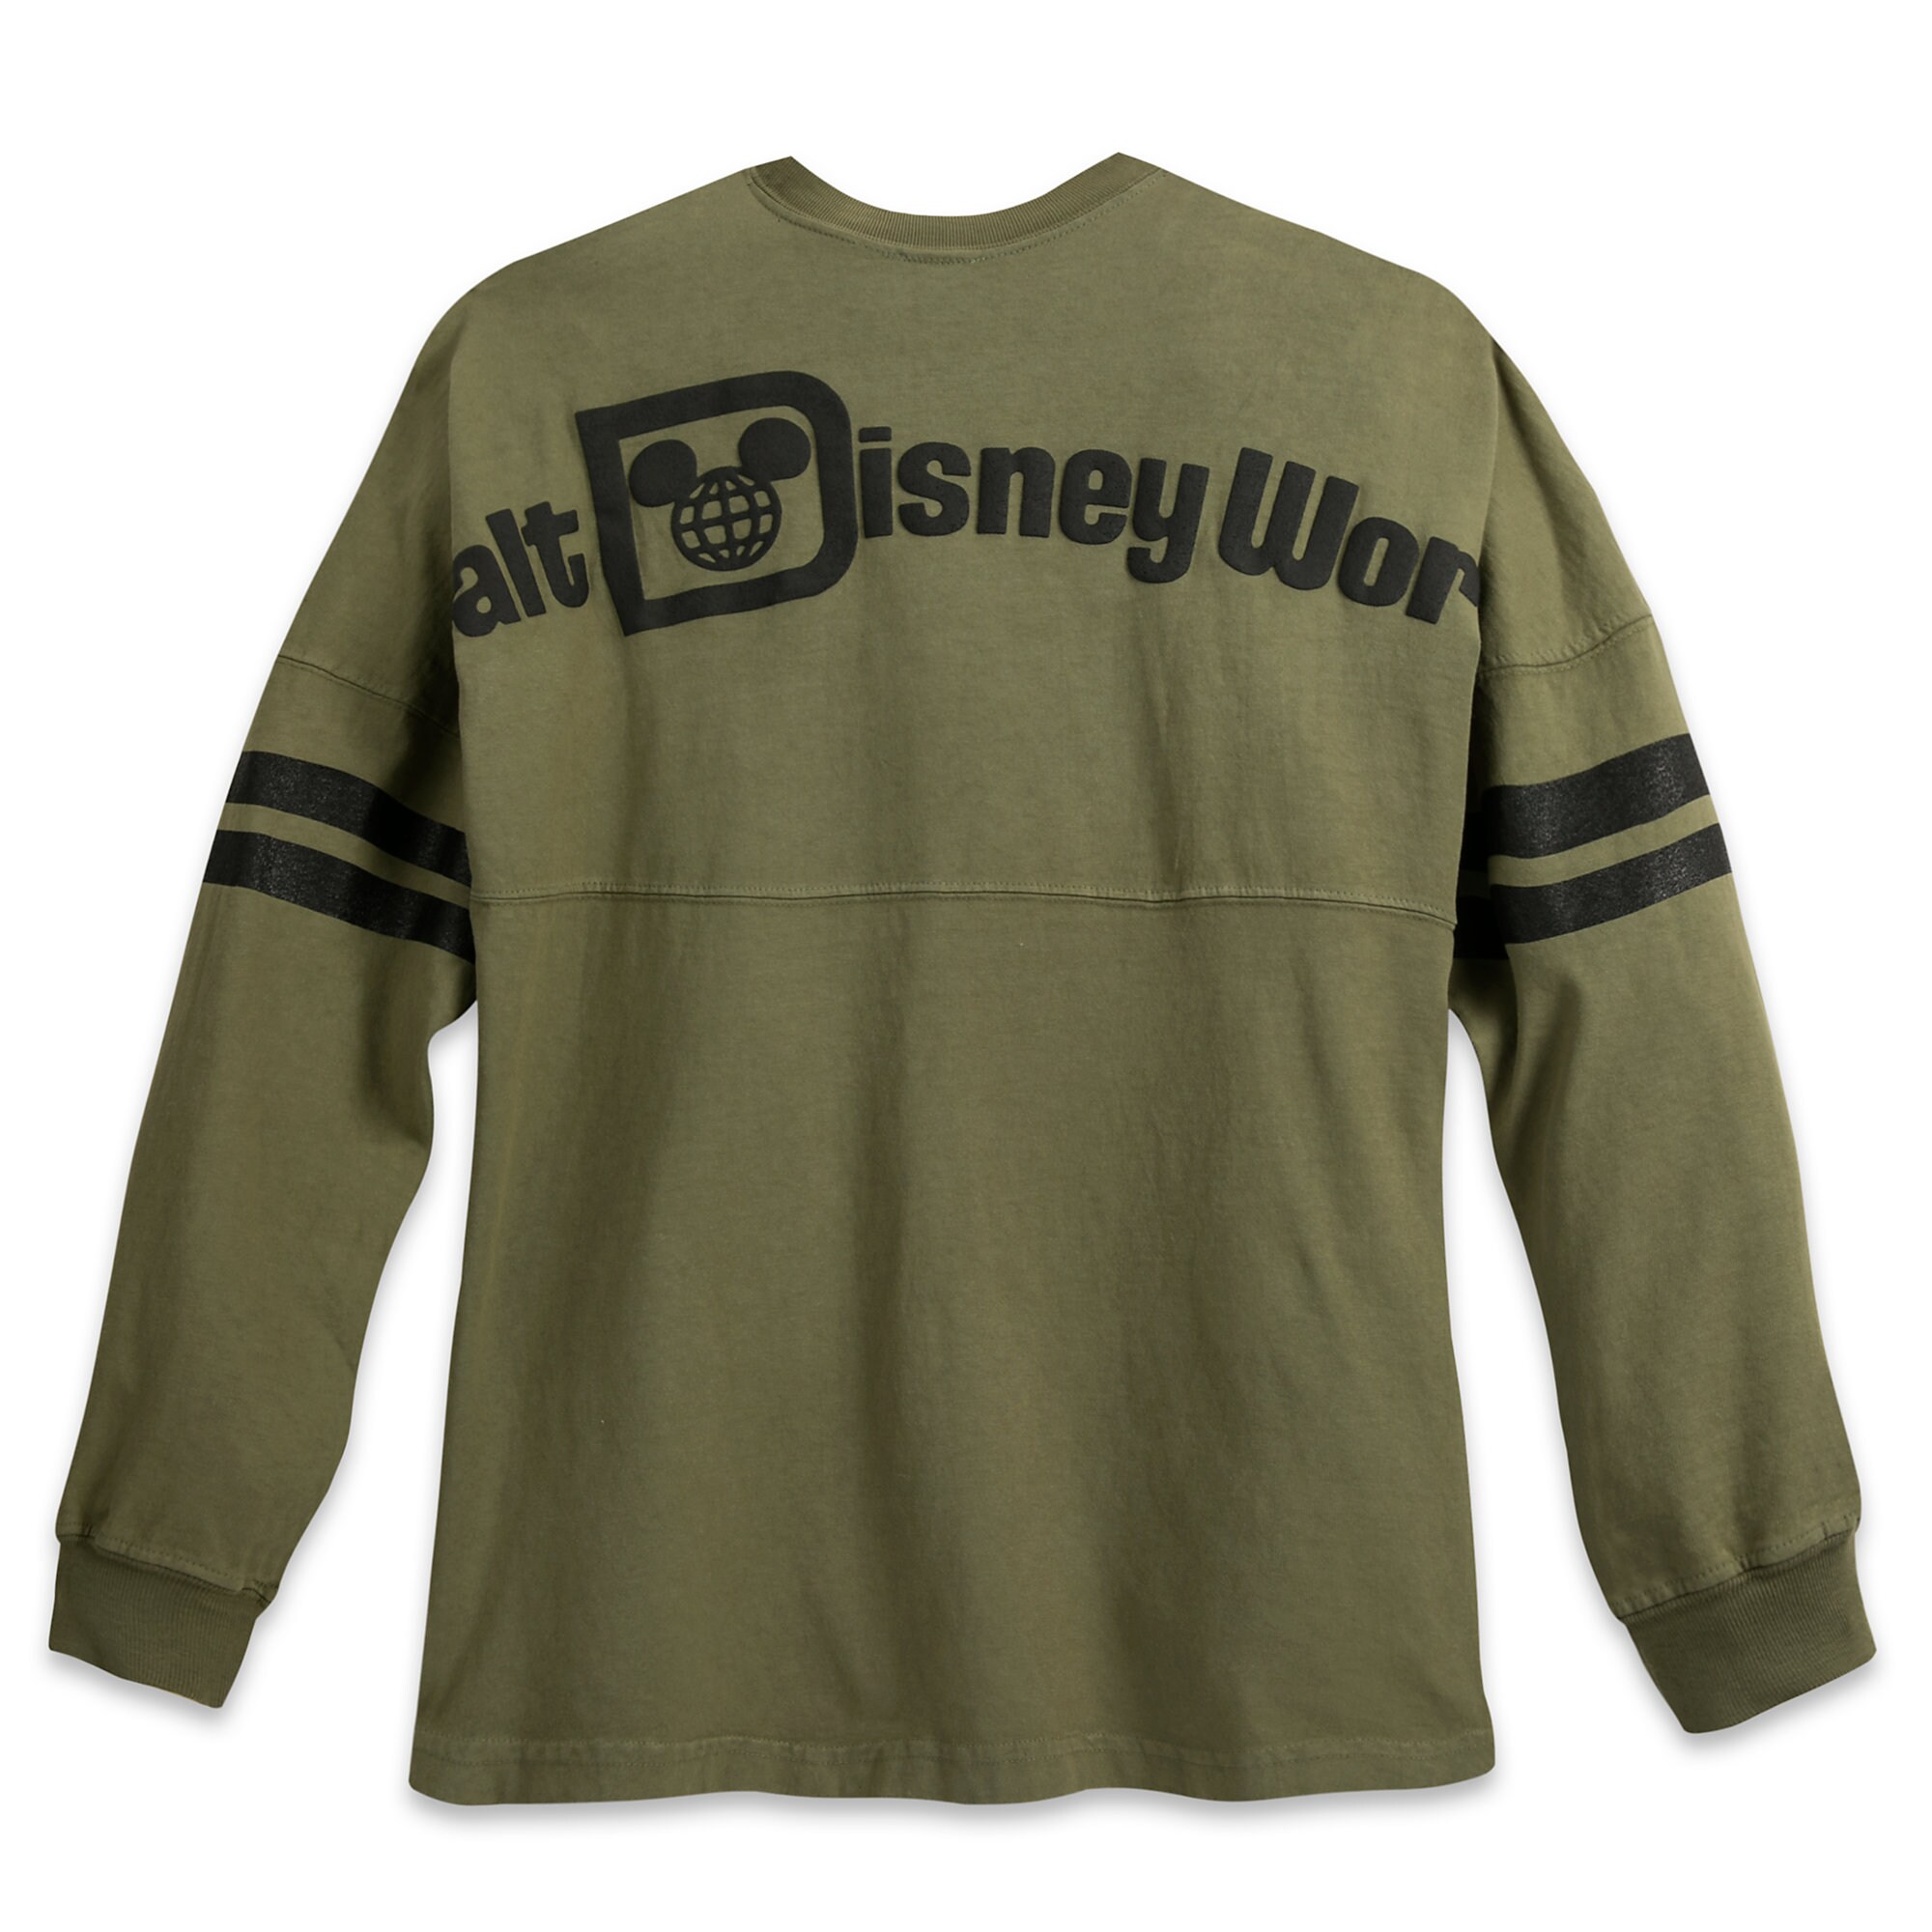 Walt Disney World Spirit Jersey for Adults - Green